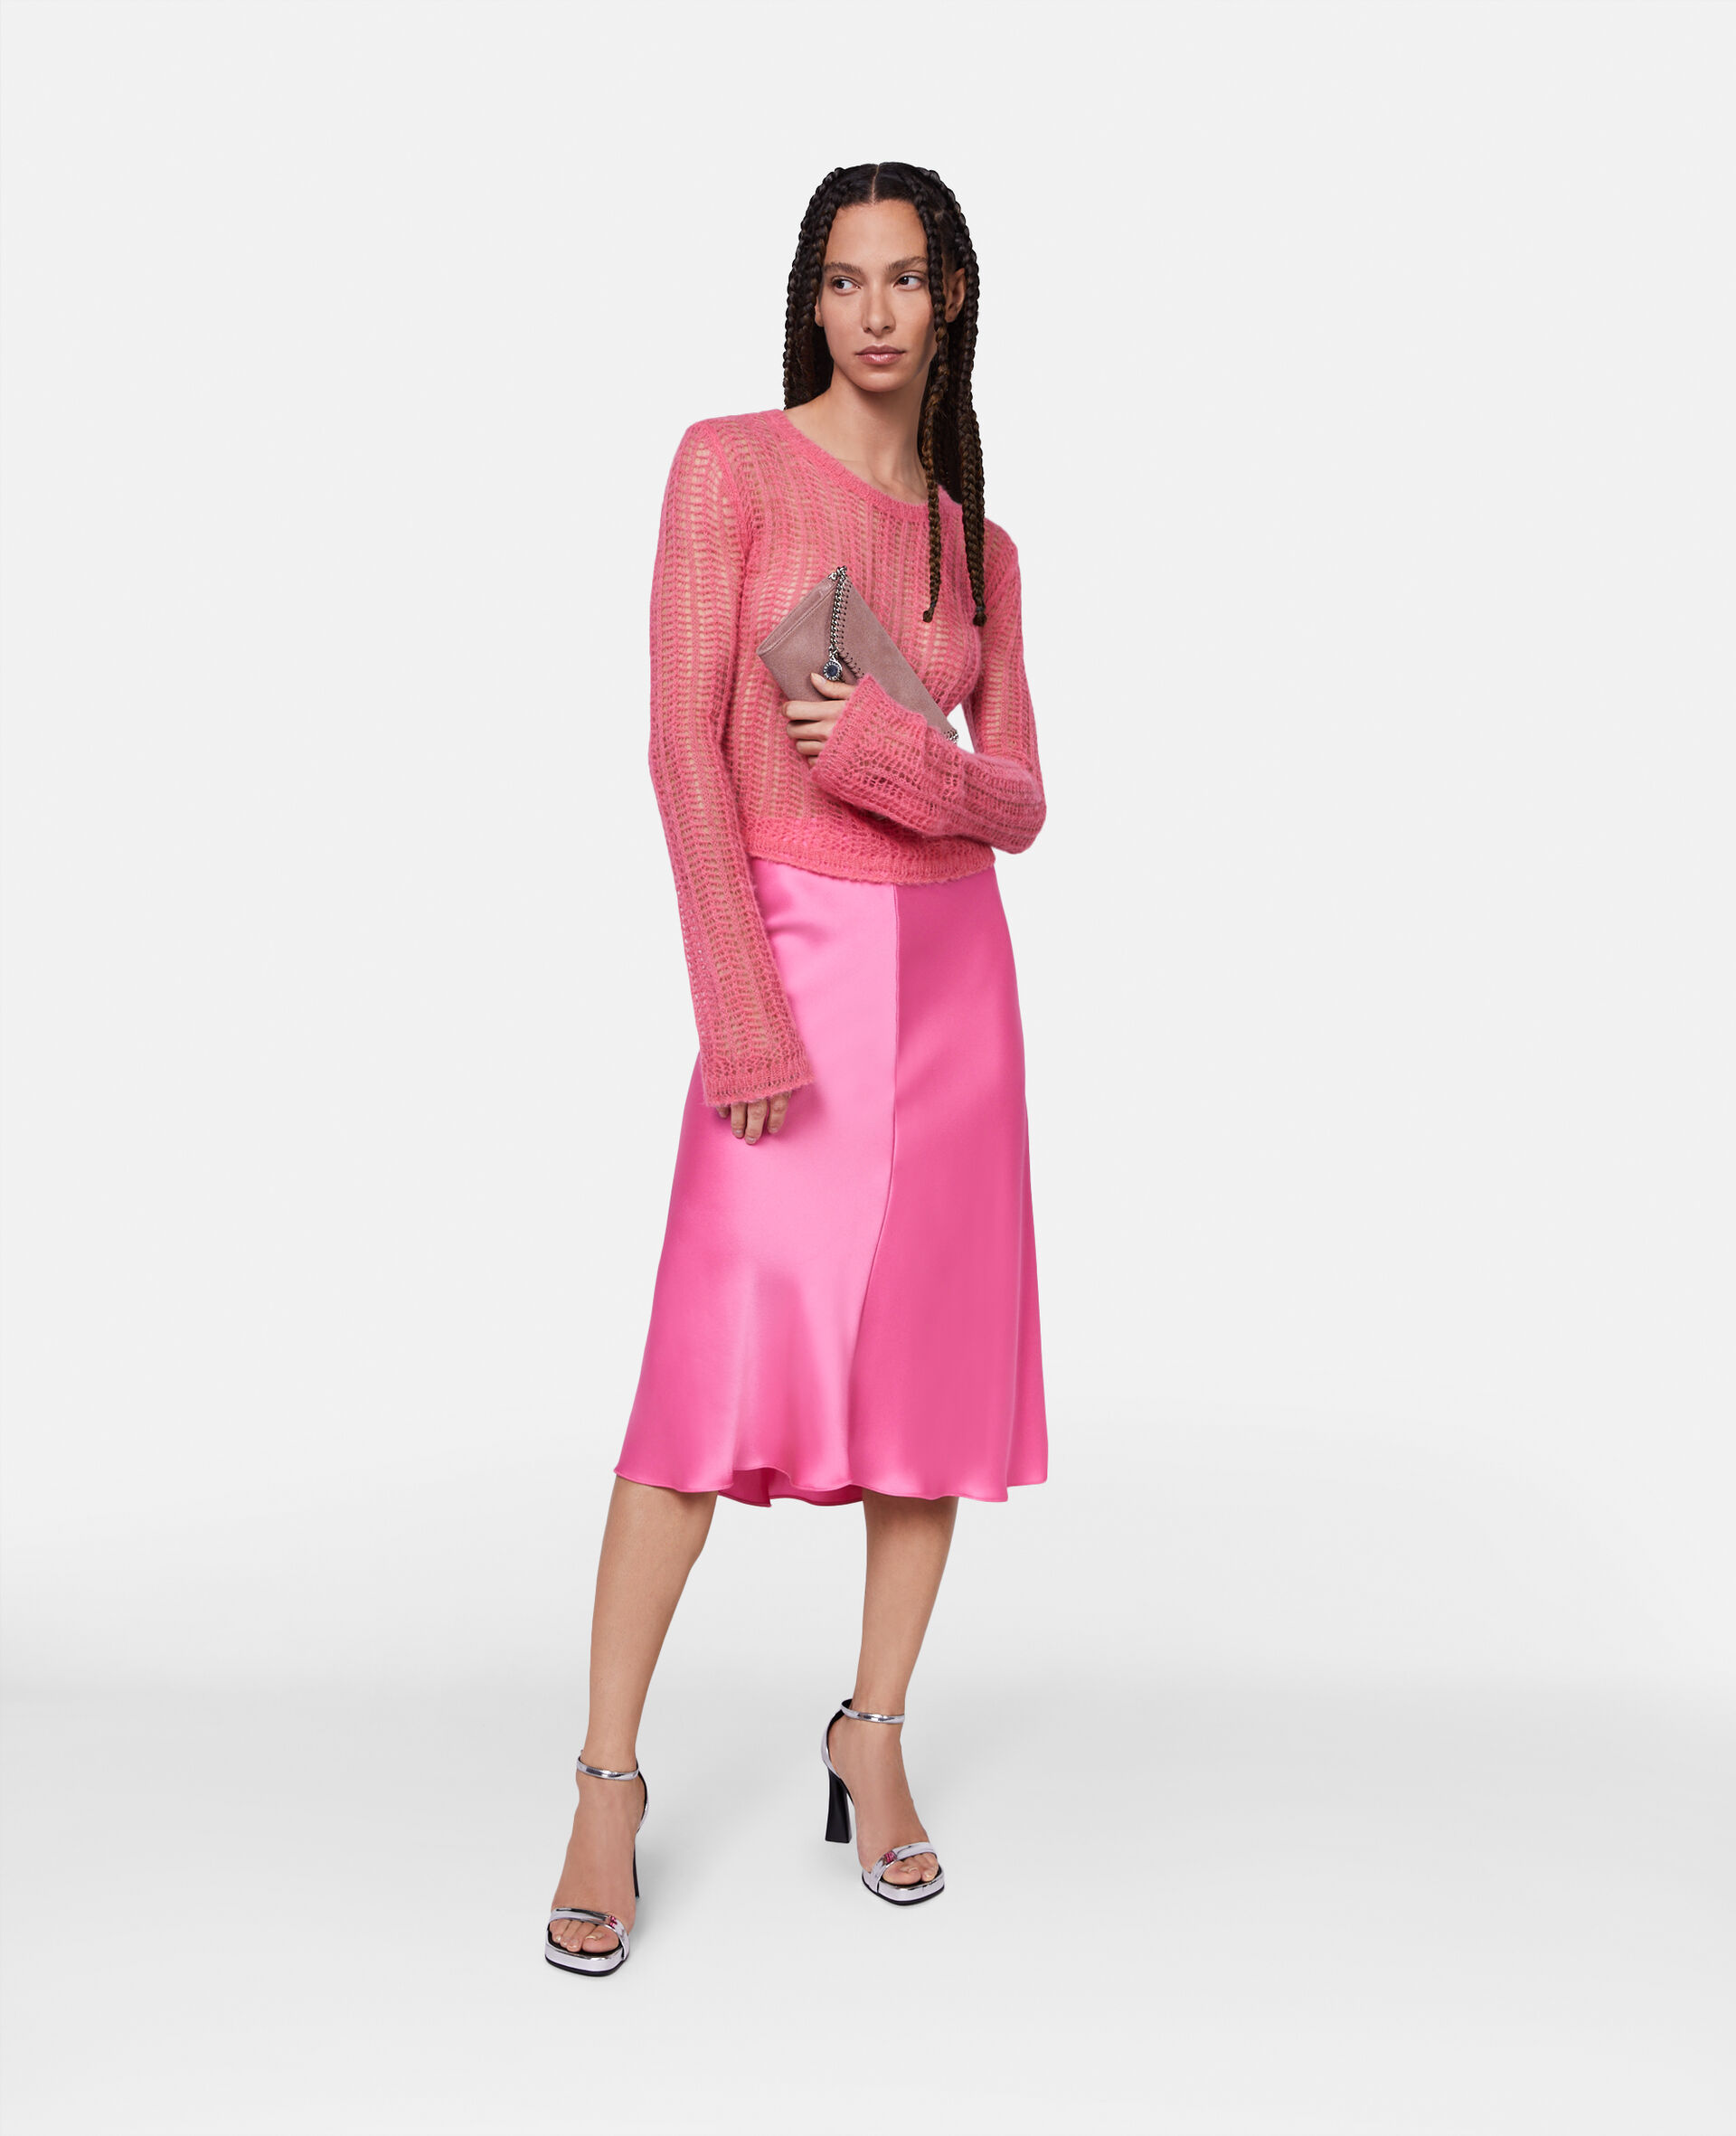 双层缎面斜裁中长半身裙-粉色-model